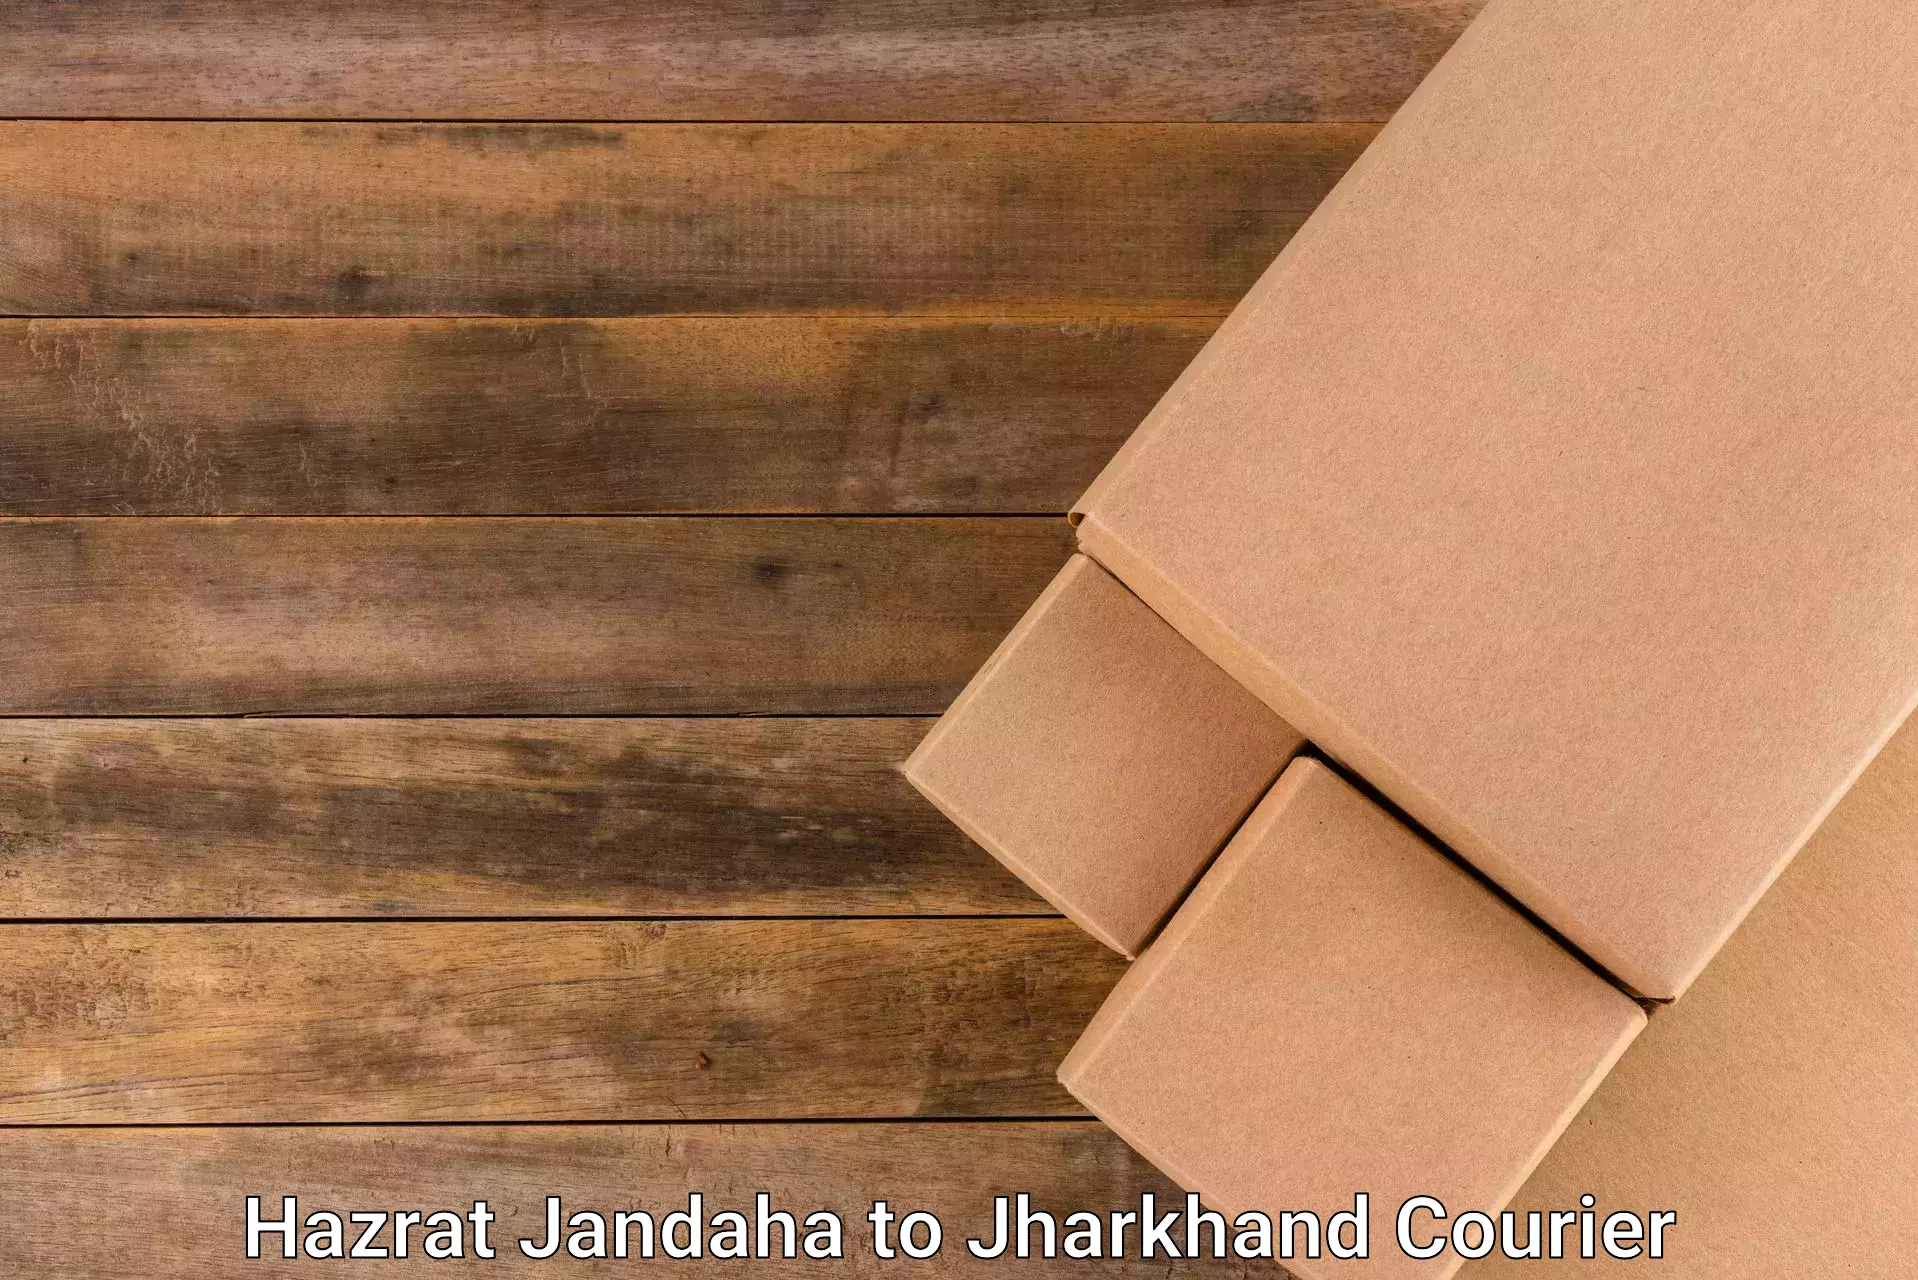 Courier service comparison Hazrat Jandaha to Chandankiyari